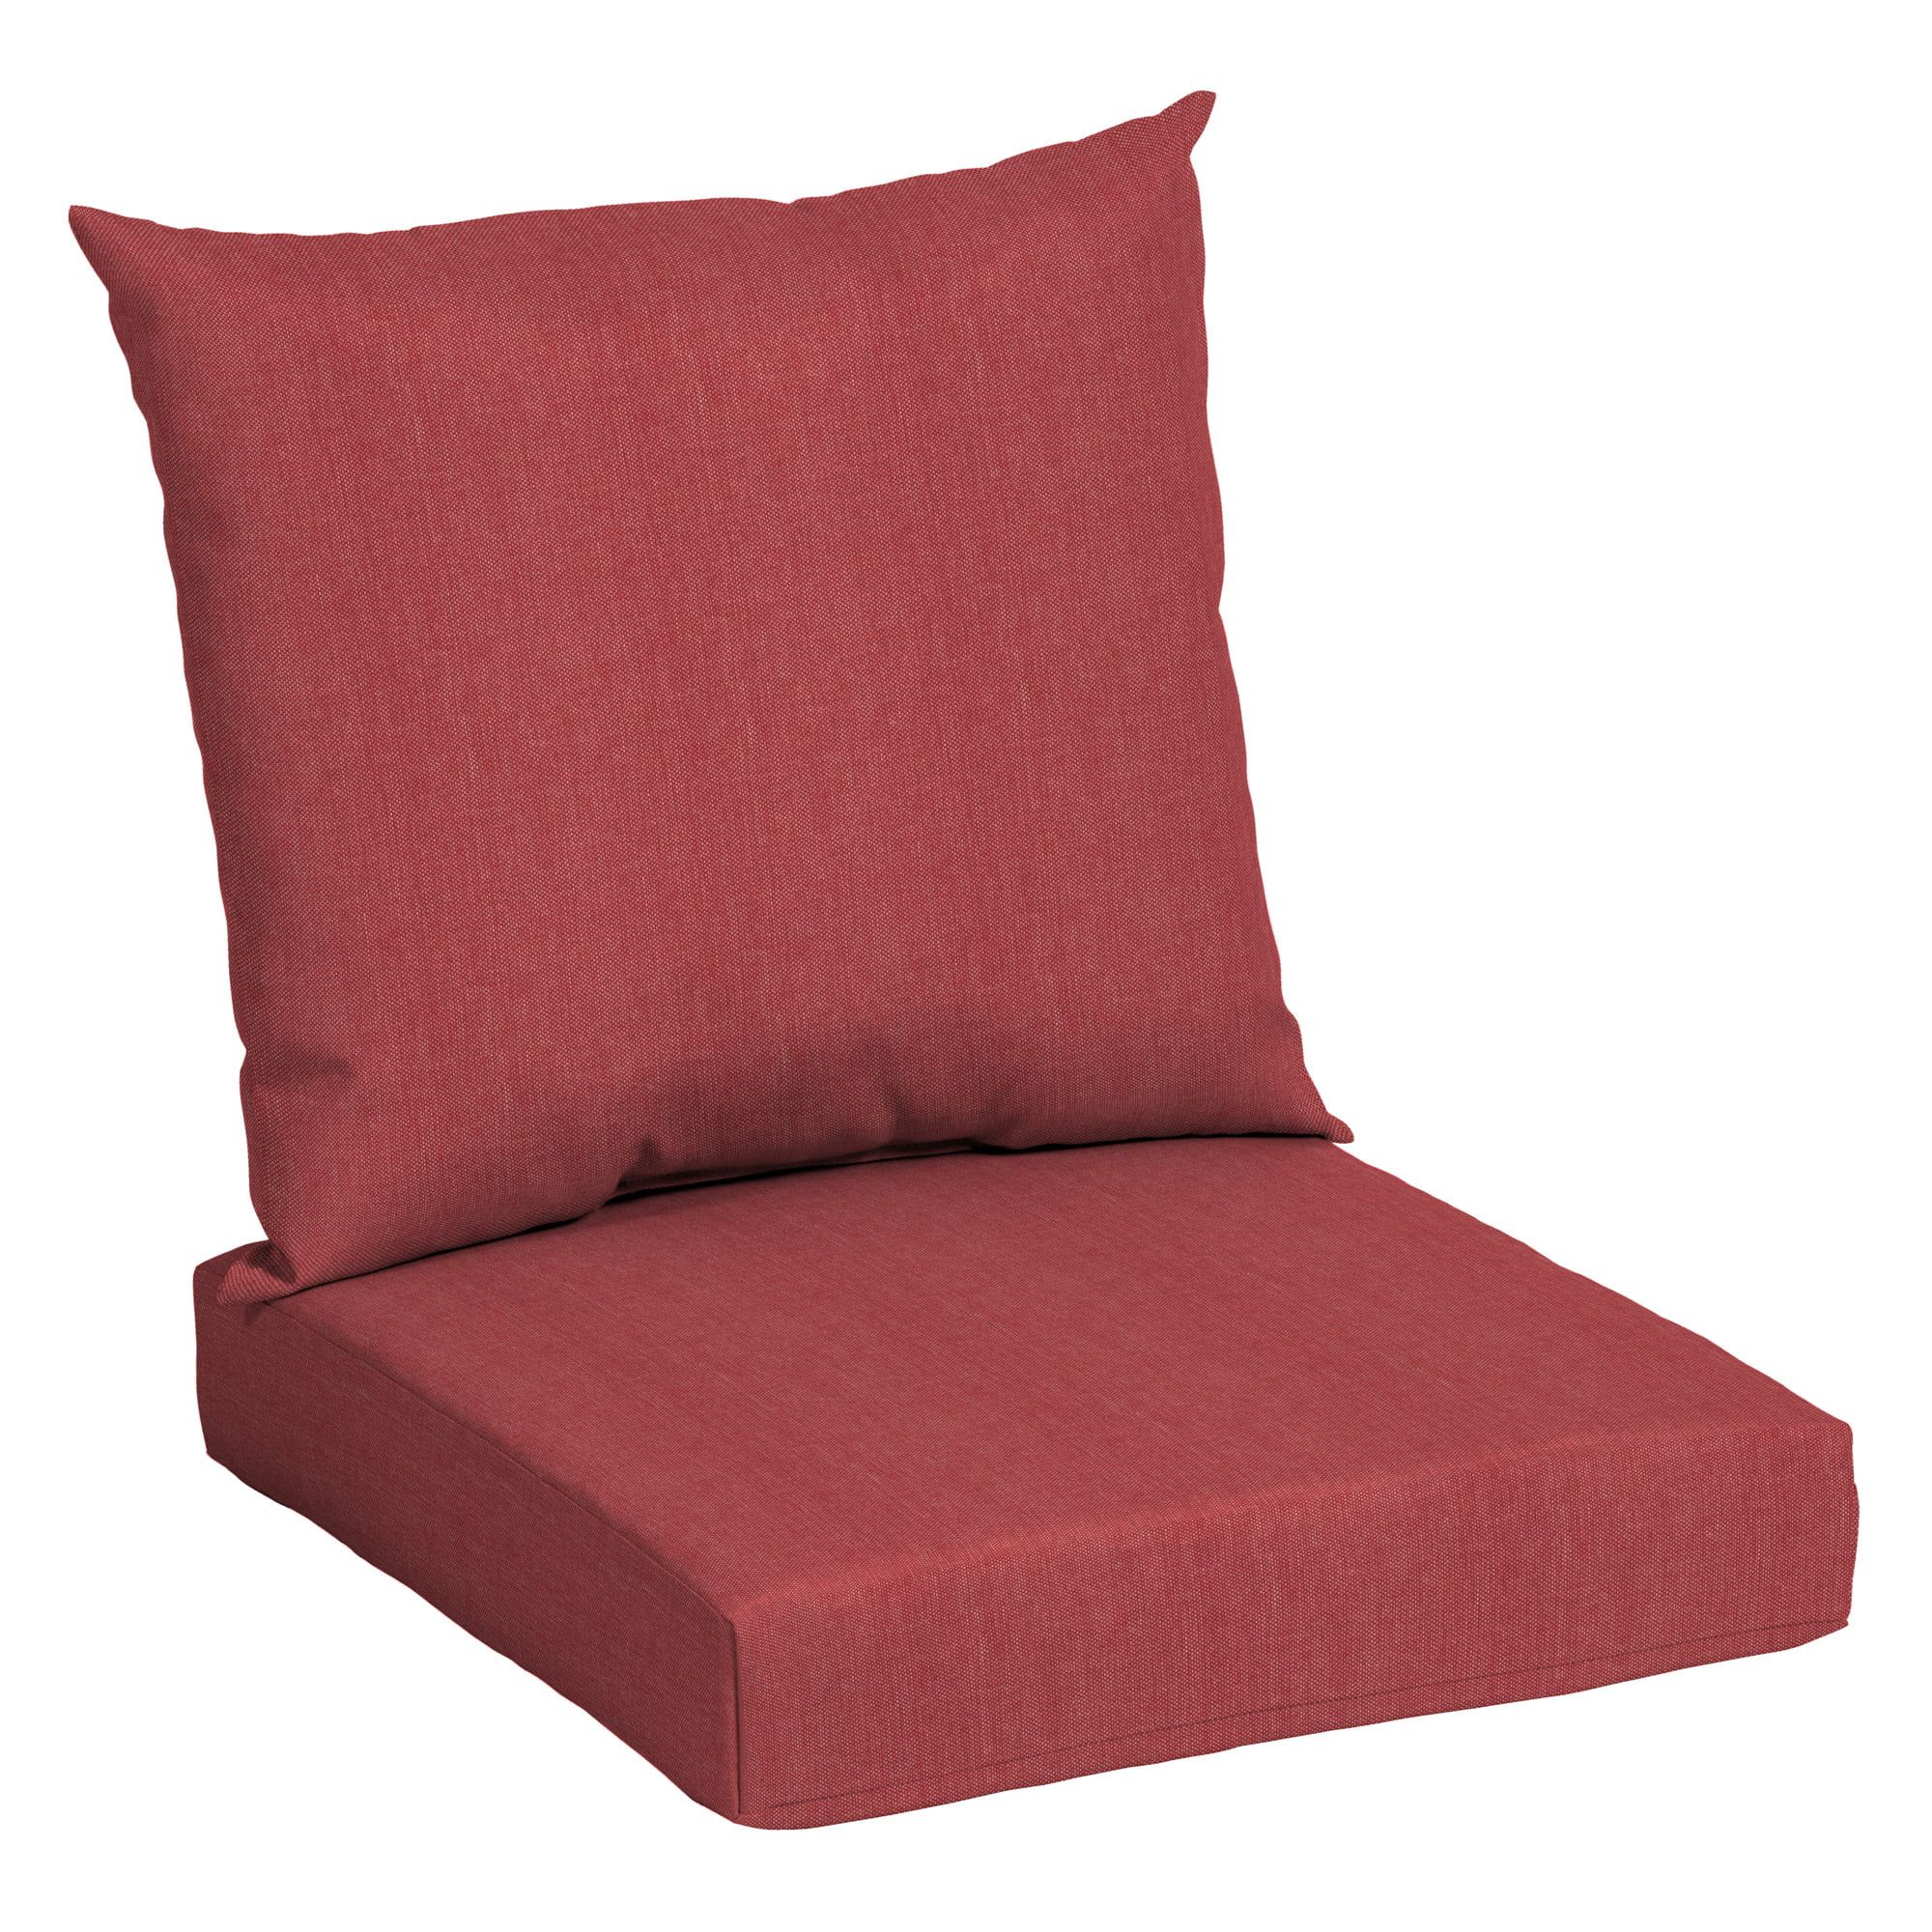 Mainstays Solid Tan 45 x 22.75 in. Outdoor Deep Seat Cushion Set | Walmart (US)